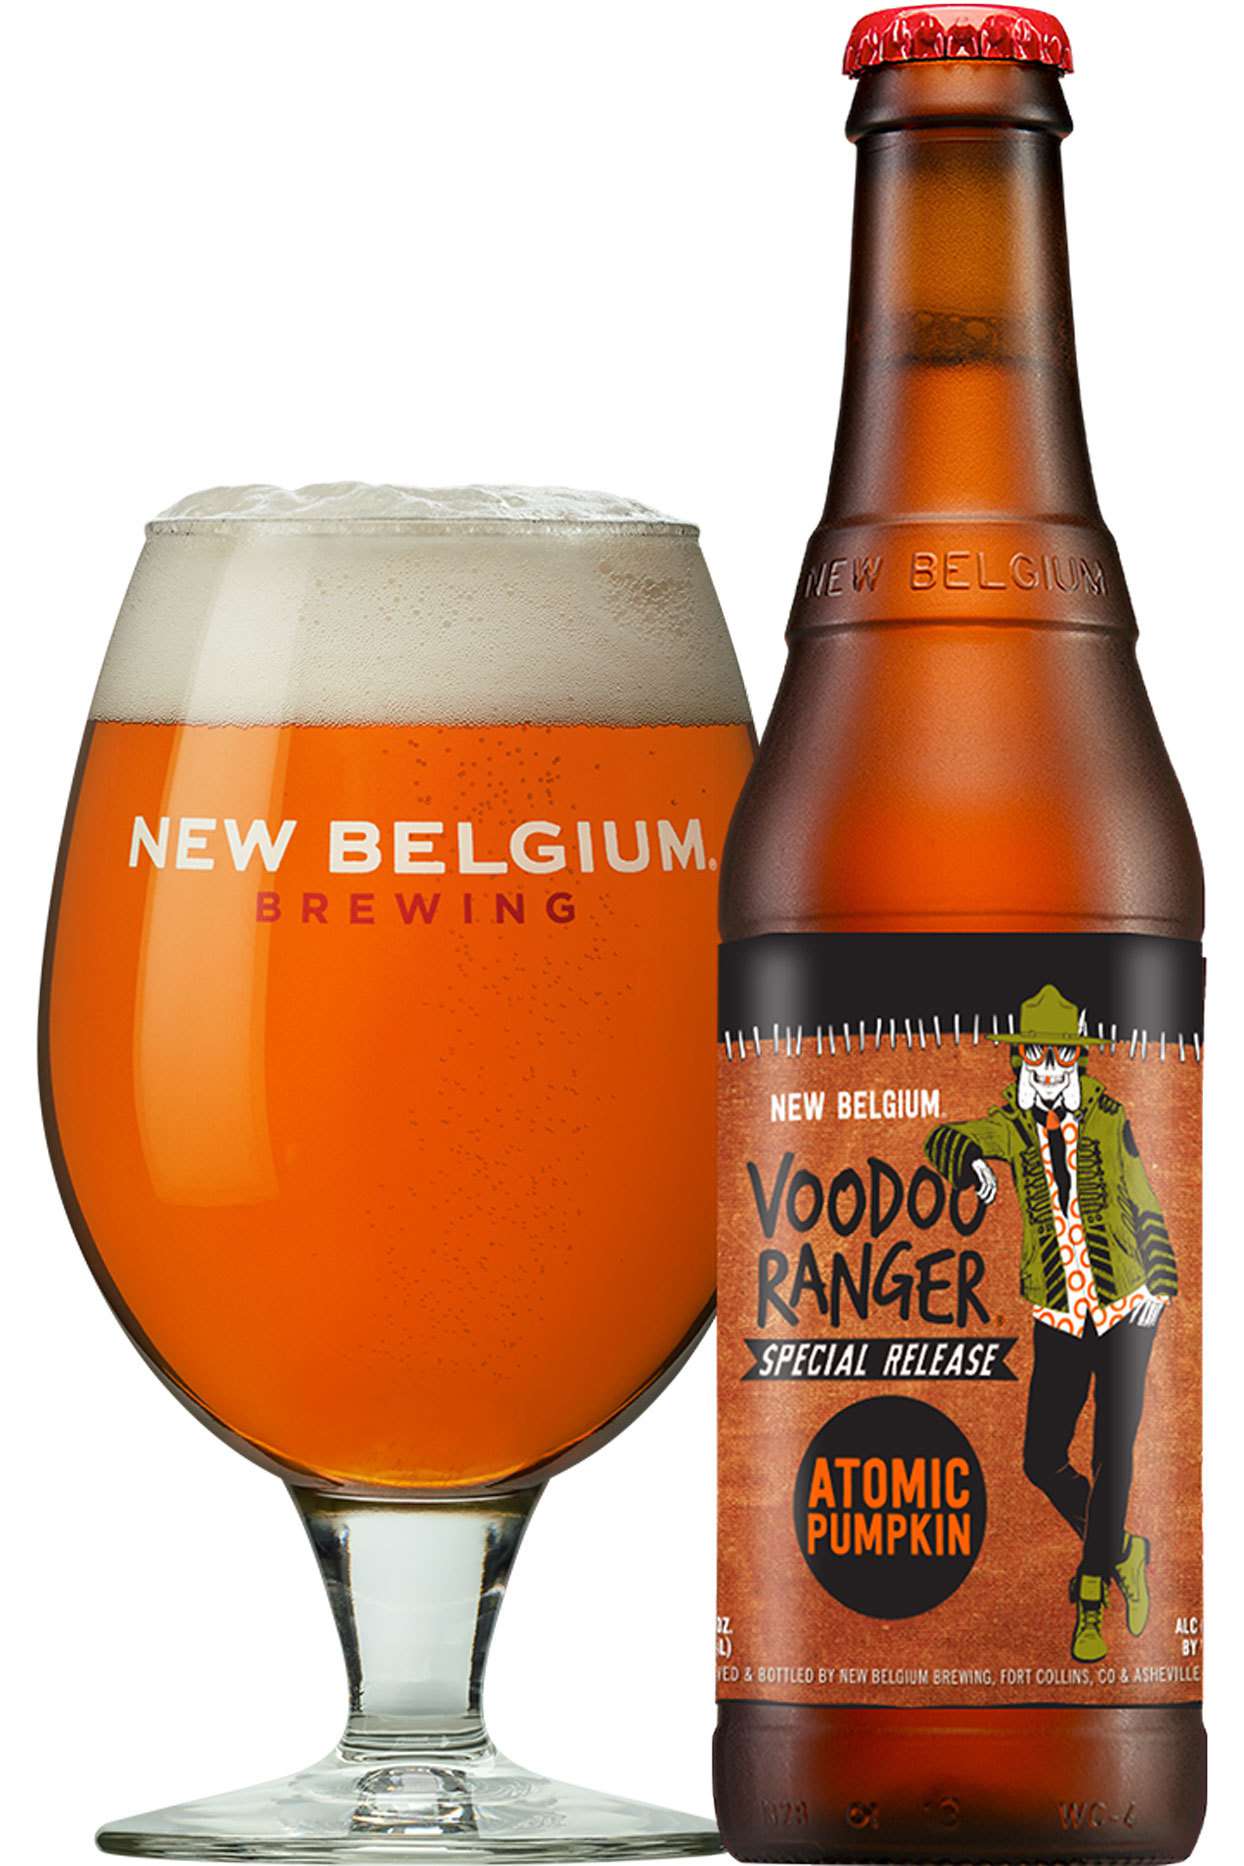 New Belguim Voodoo Ranger Special Release Atomic Pumpkin beer in bottle and glass